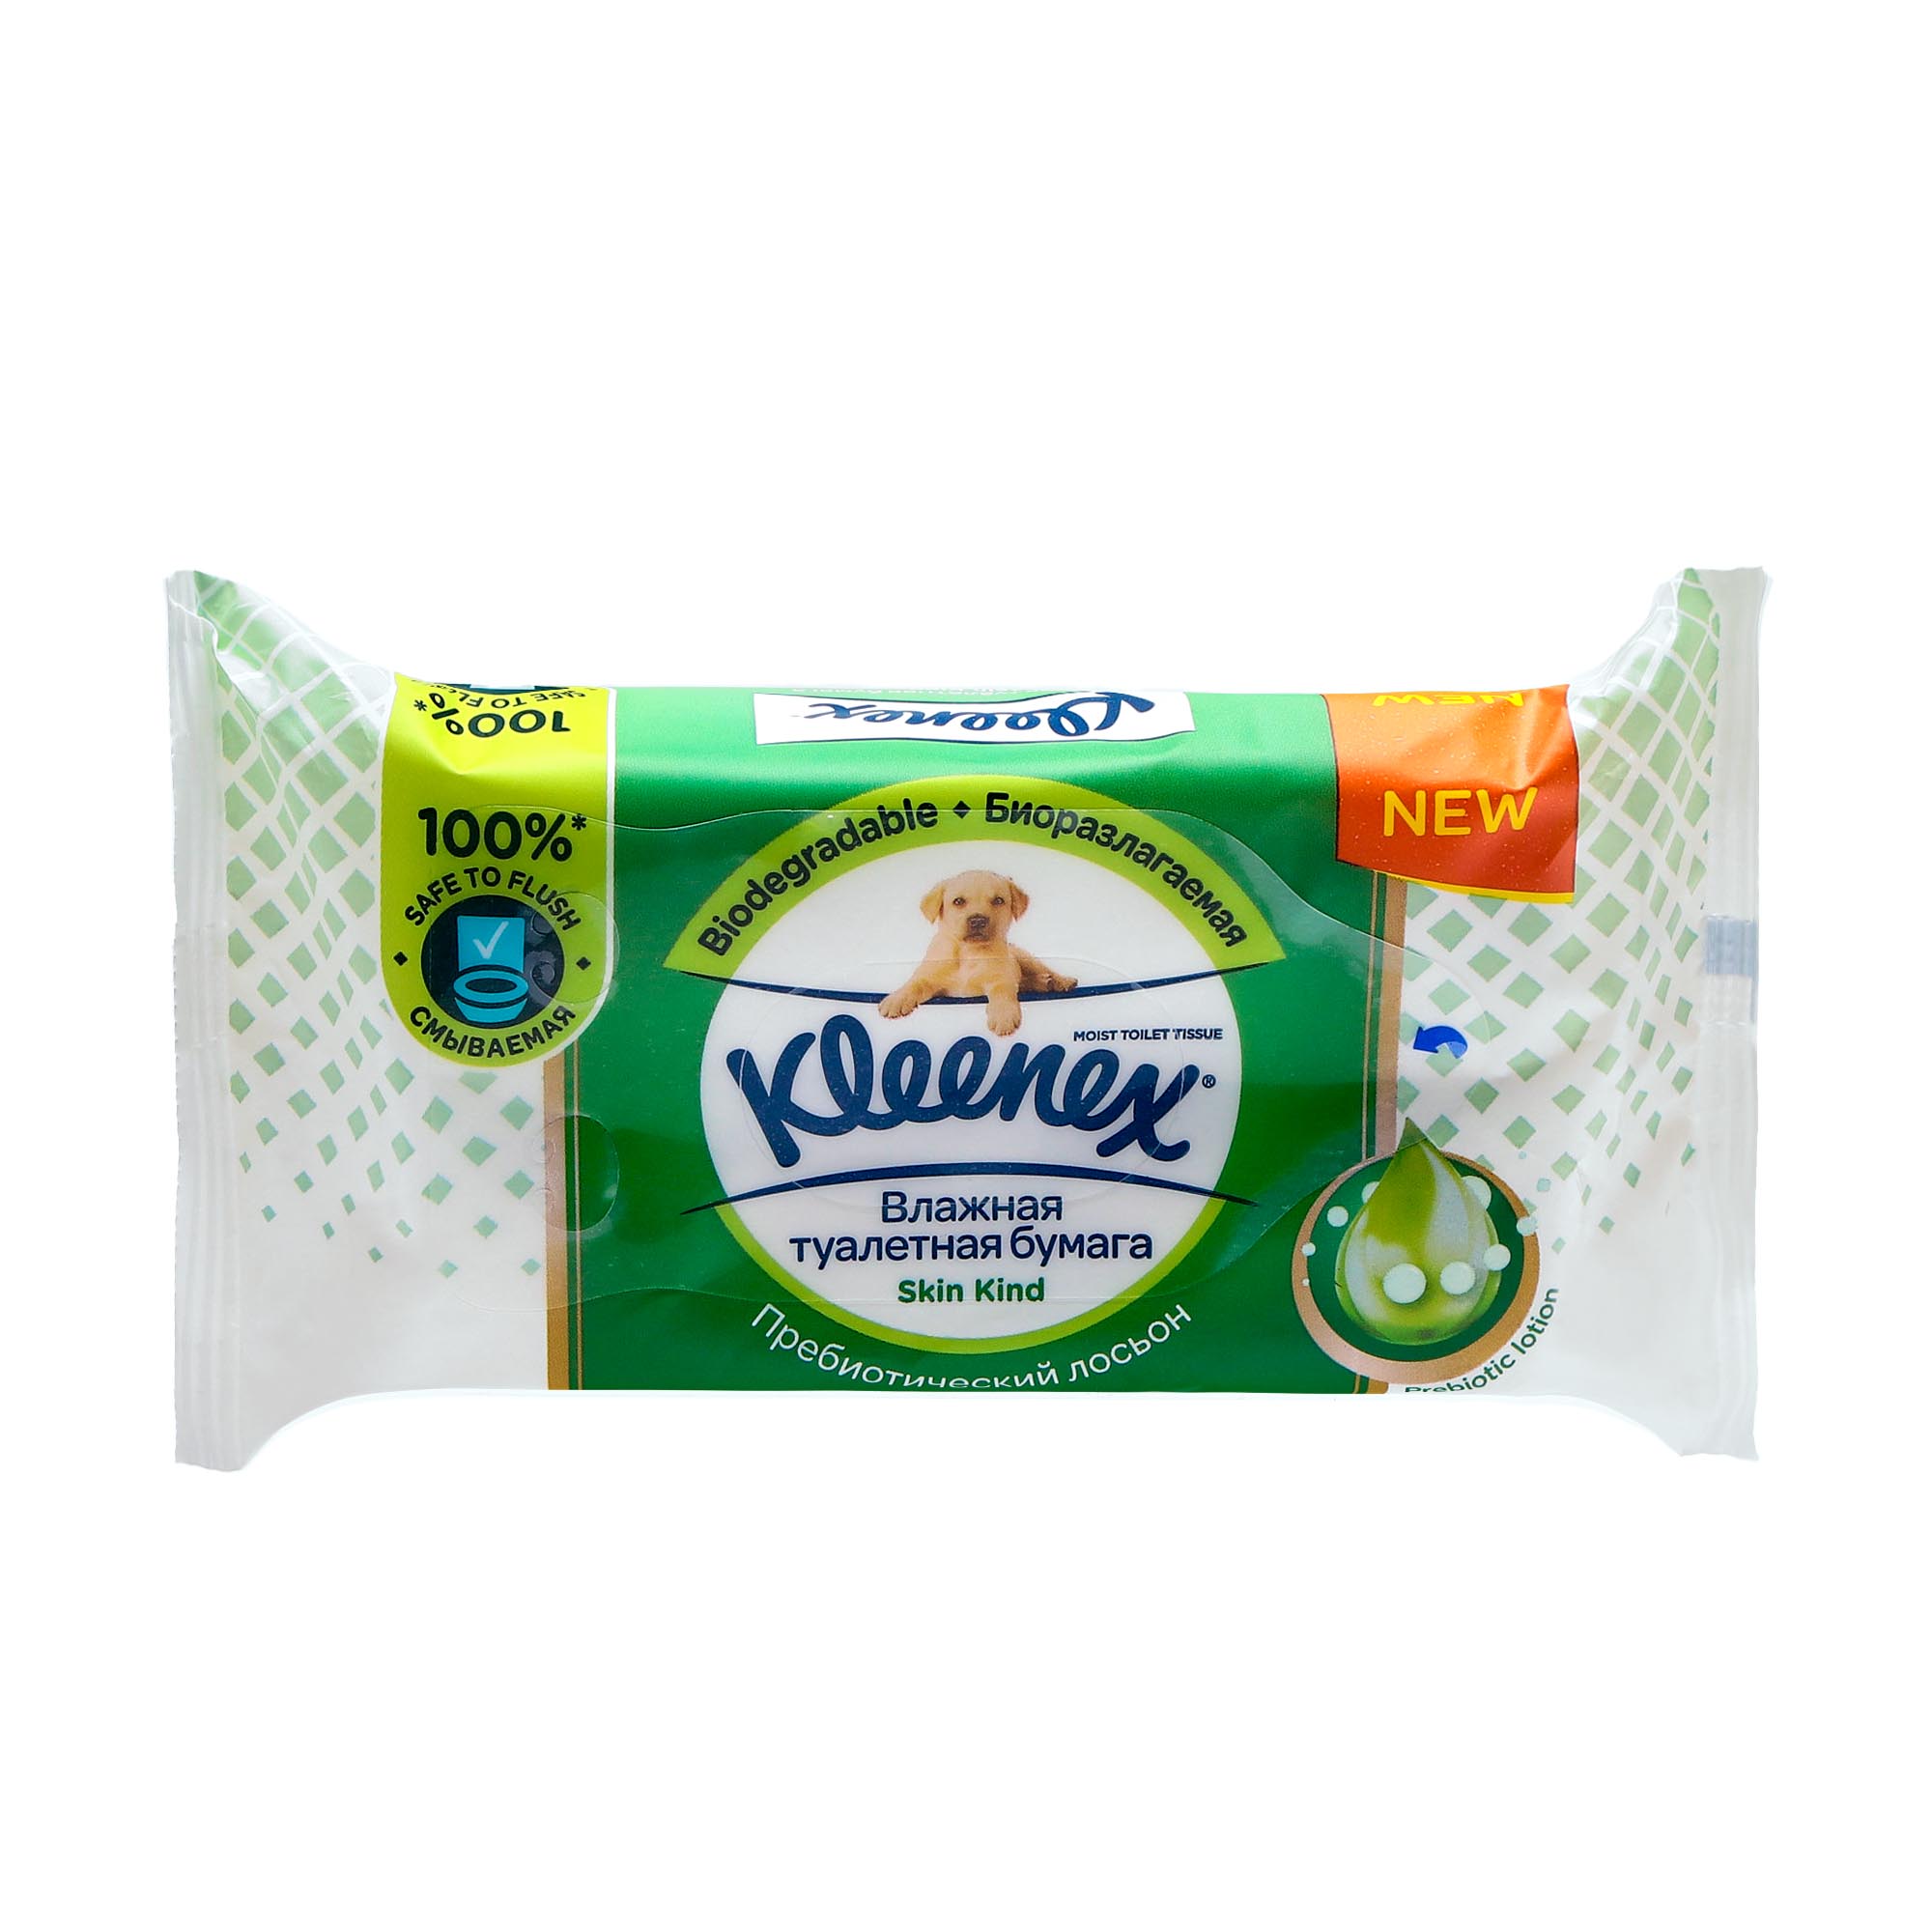 Бумага туалетная влажная Kleenex скинкайнд, 38 шт влажная туалетная бумага happy для детей с экстрактом календулы 42 шт